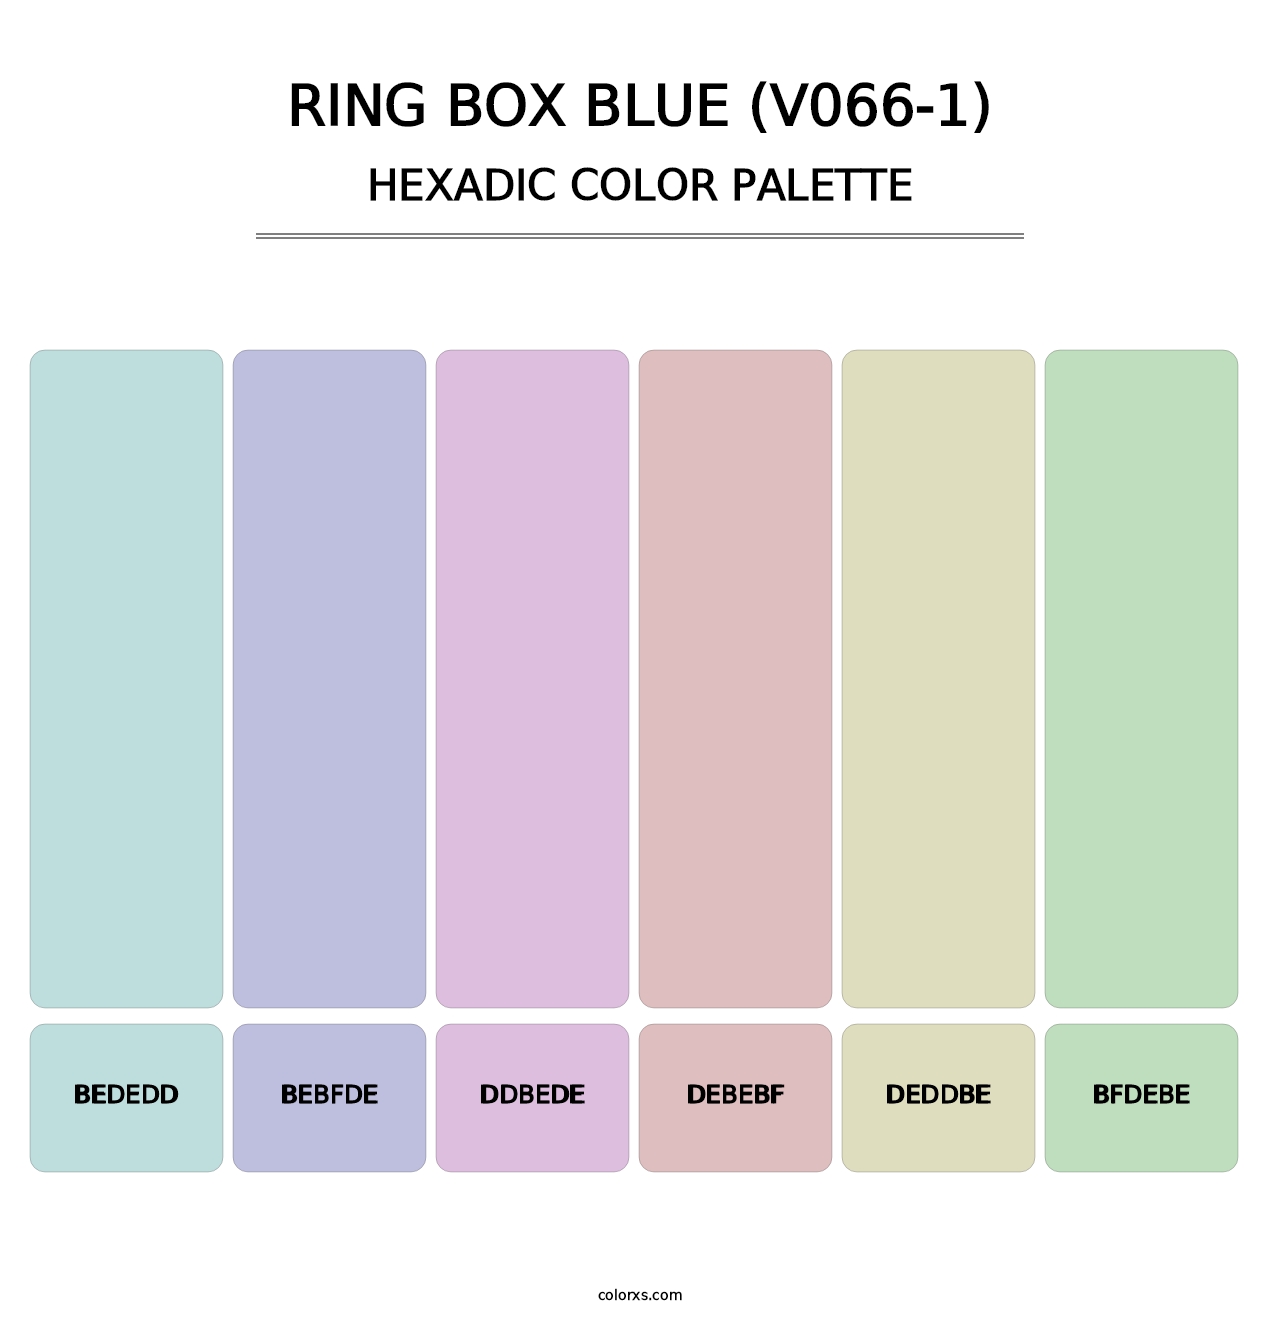 Ring Box Blue (V066-1) - Hexadic Color Palette